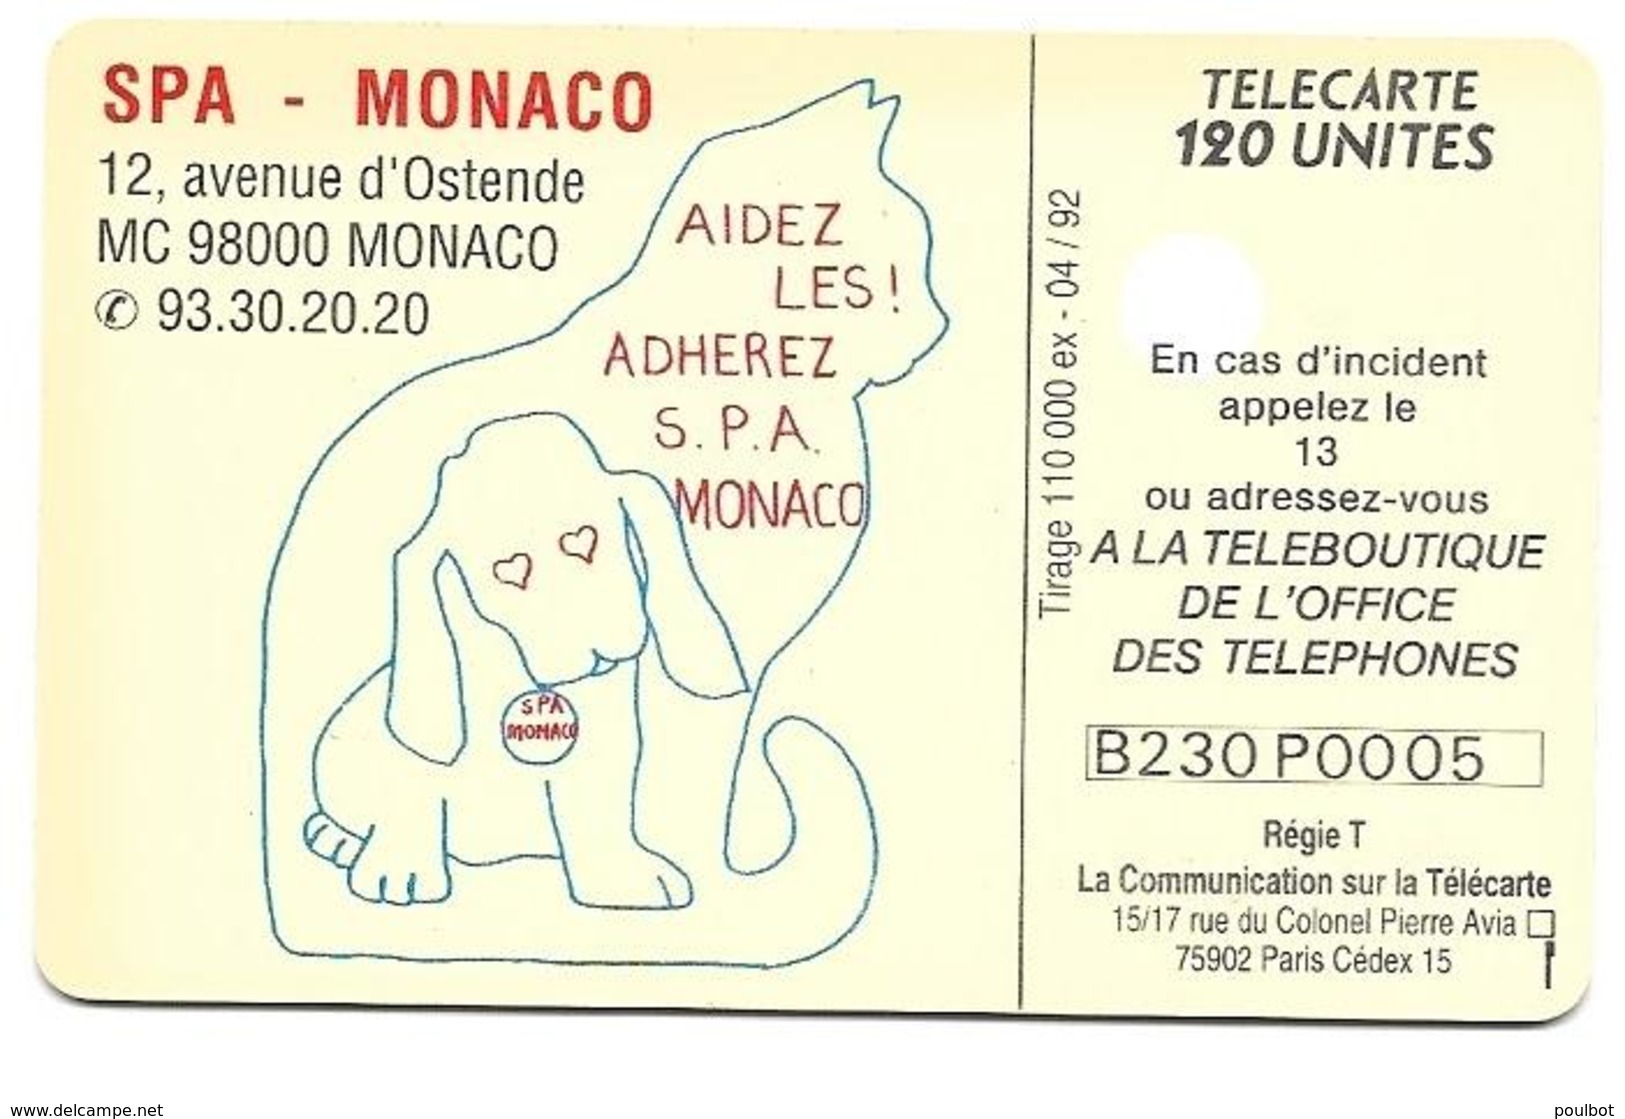 Télécarte Monaco MF 23 SPA De Monaco - Monace